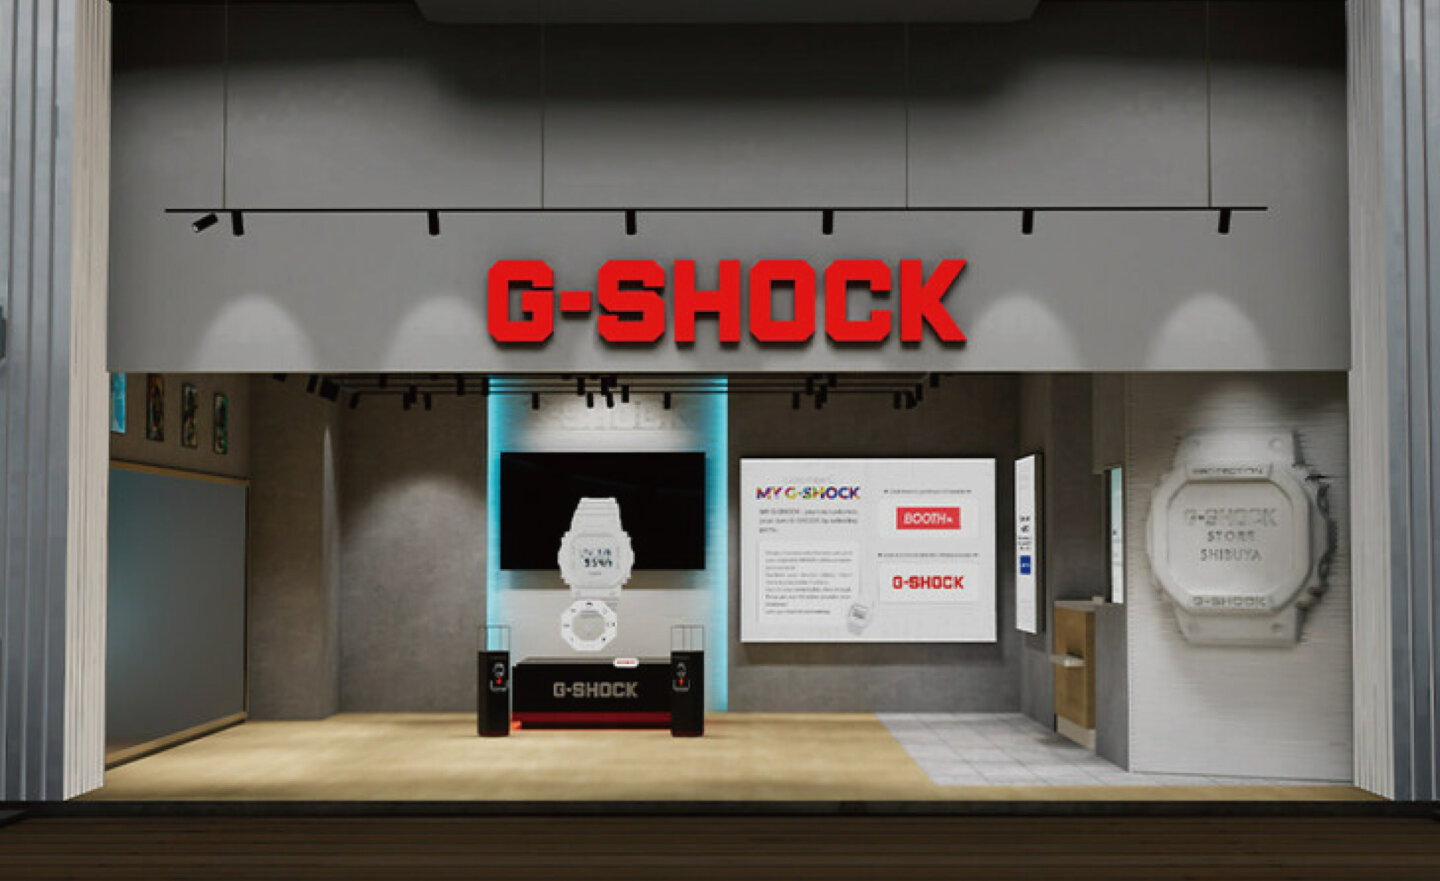 卡西歐元宇宙 G-SHOCK 虛擬商店將於 10/6 開幕